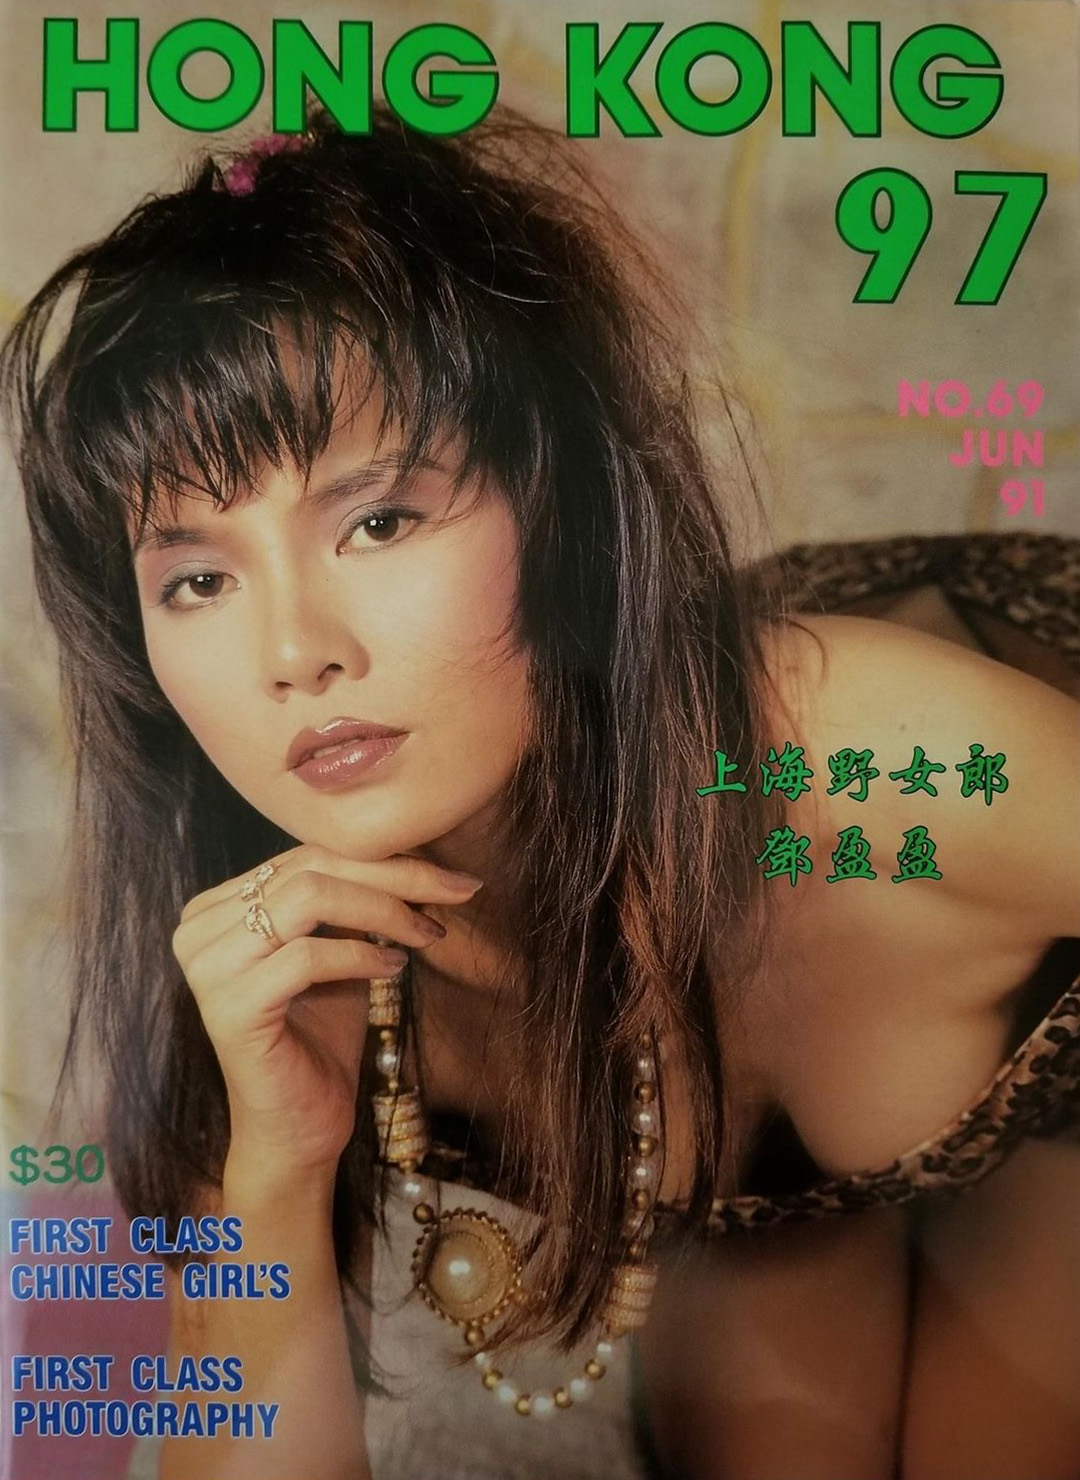 Hong Kong 97 # 69 magazine back issue Hong Kong 97 Chinese magizine back copy 